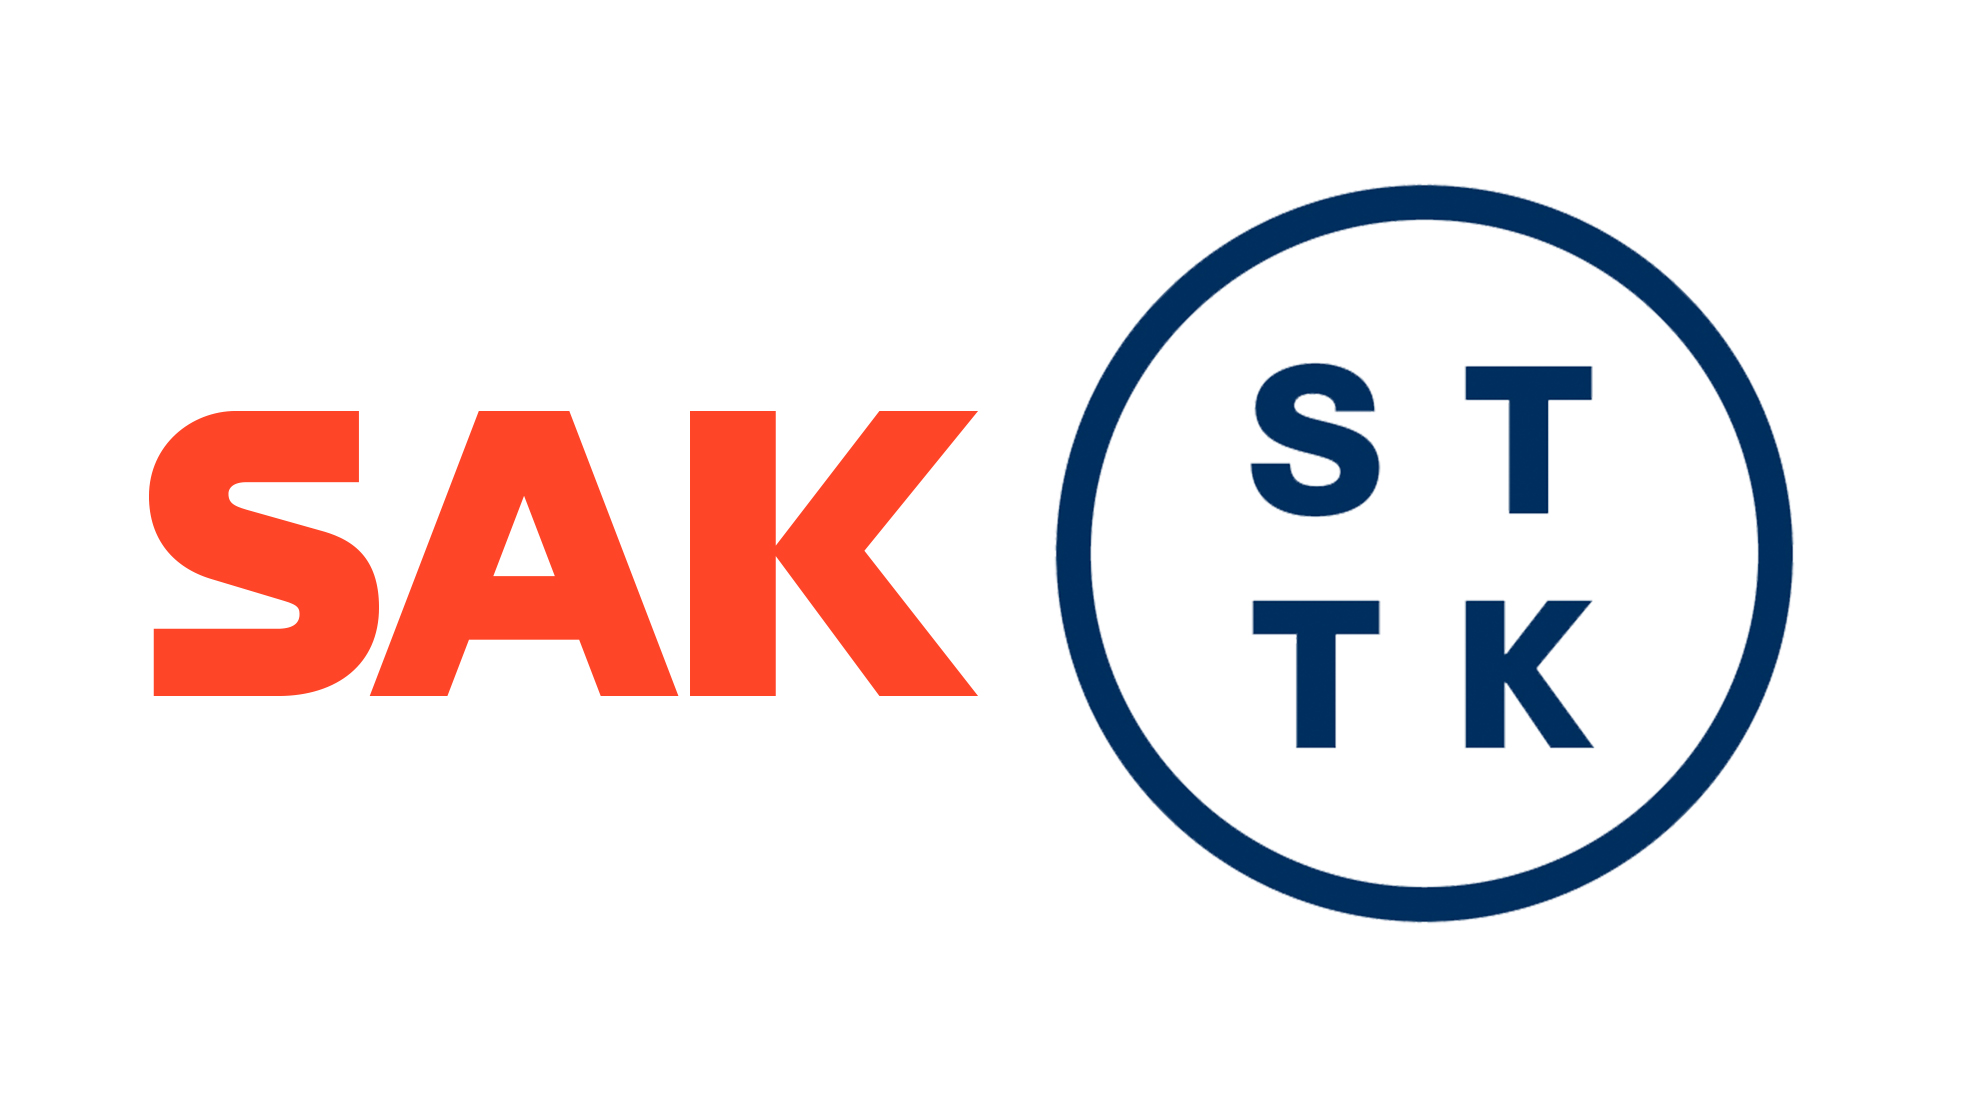 SAK:n ja STTK:n logot vierekkäin.